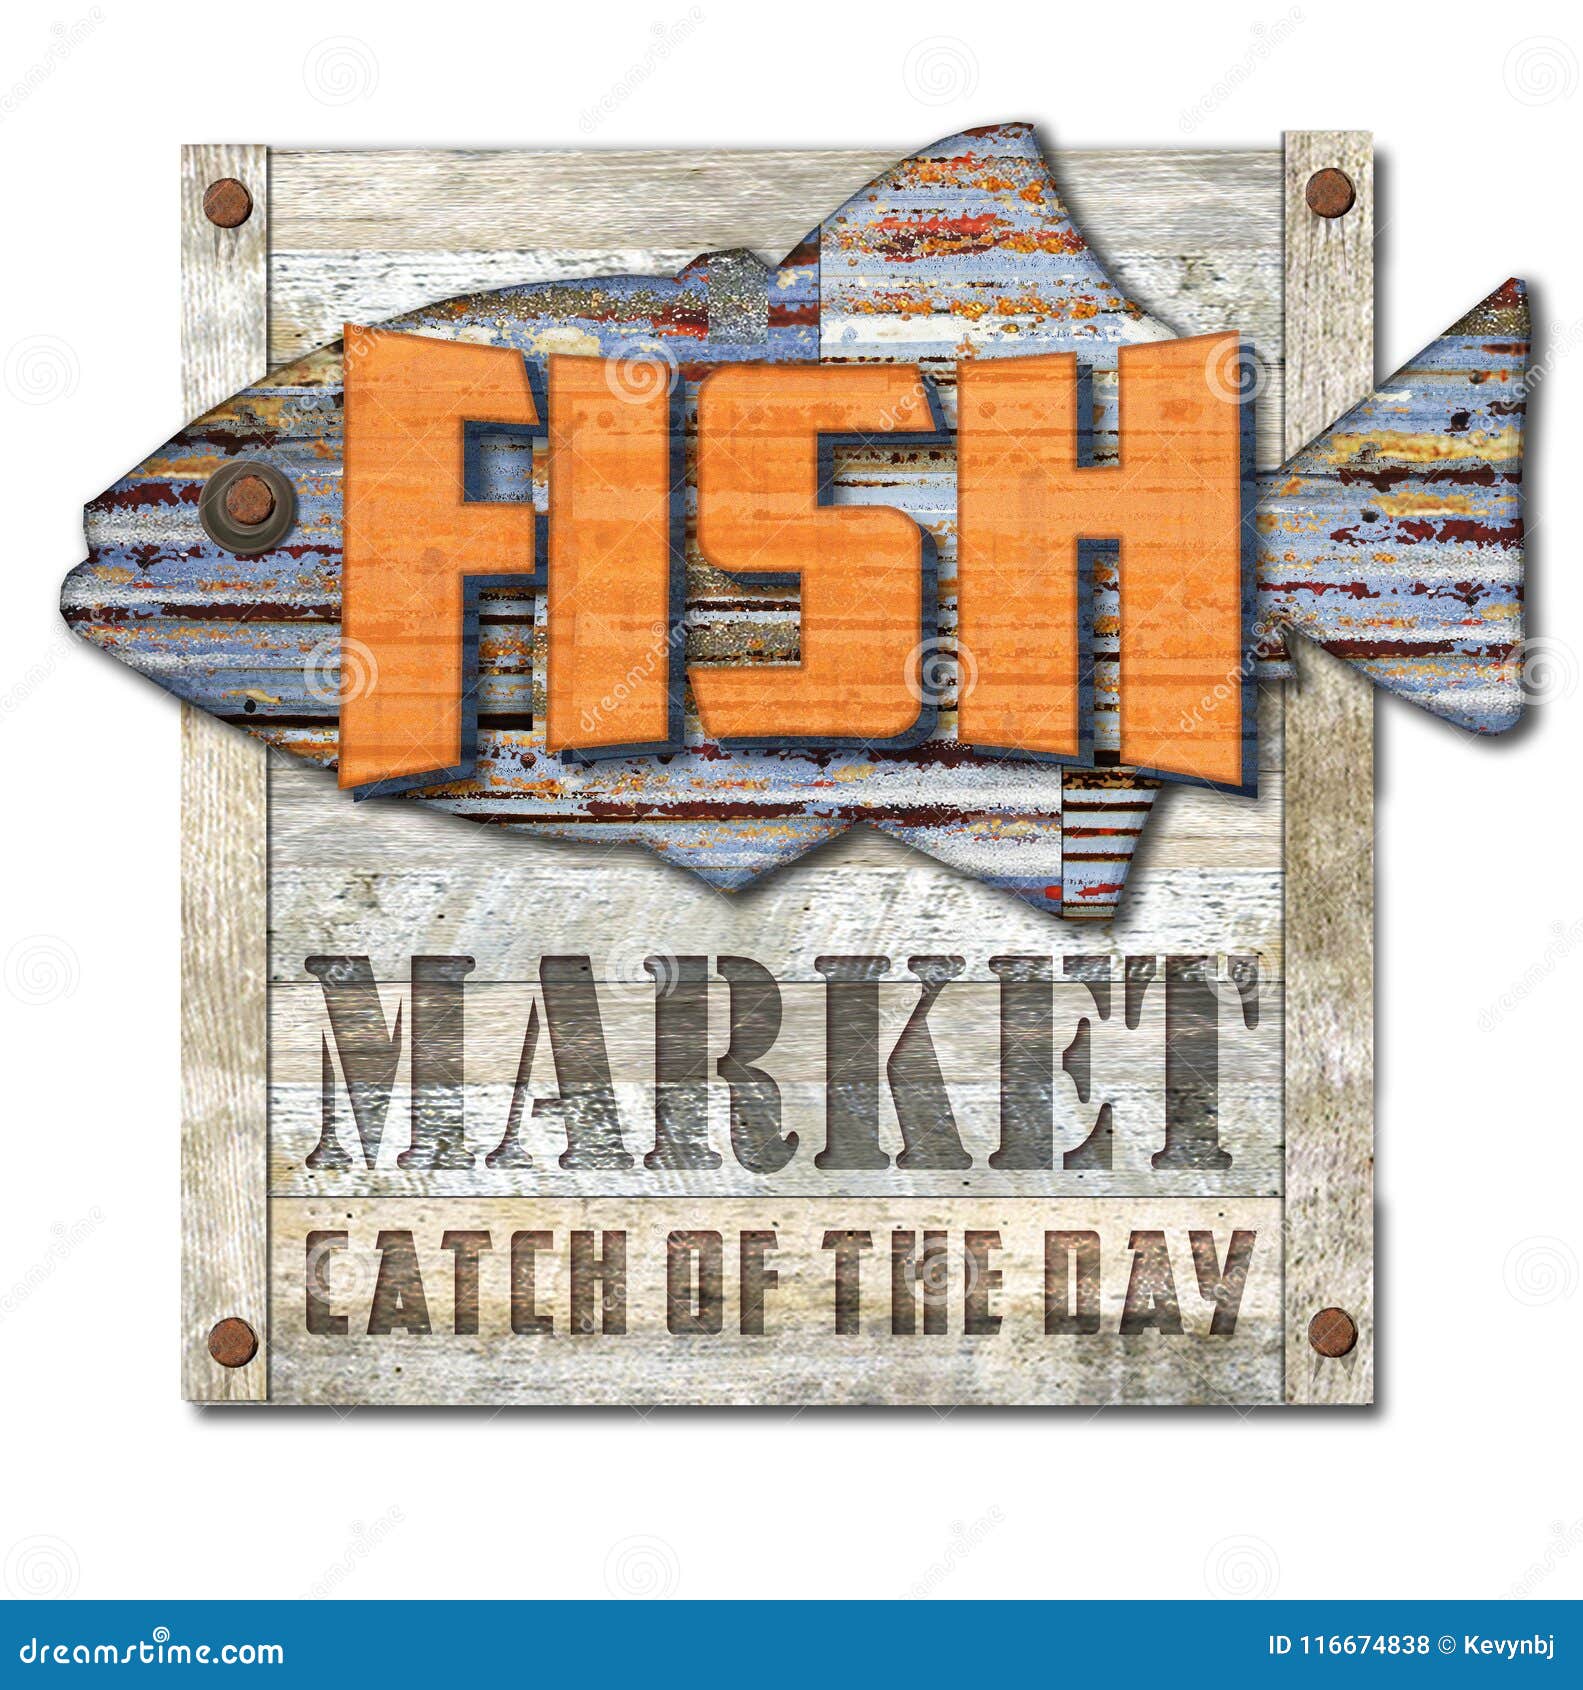 vintage fish market sign